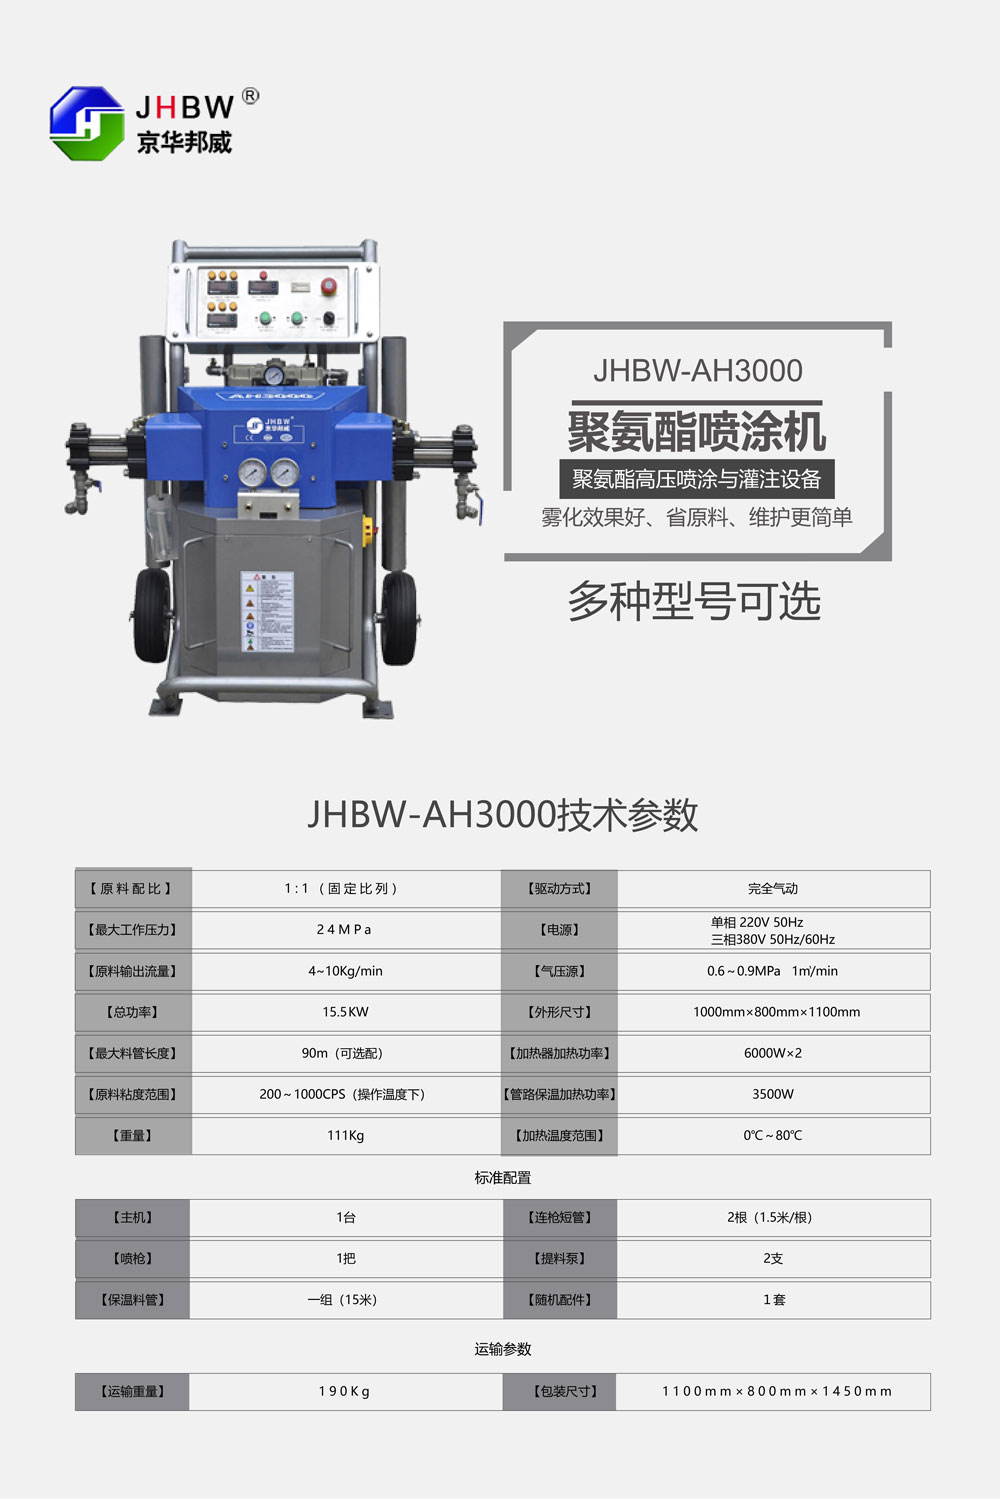 JHBW-AH3000聚氨酯喷涂机